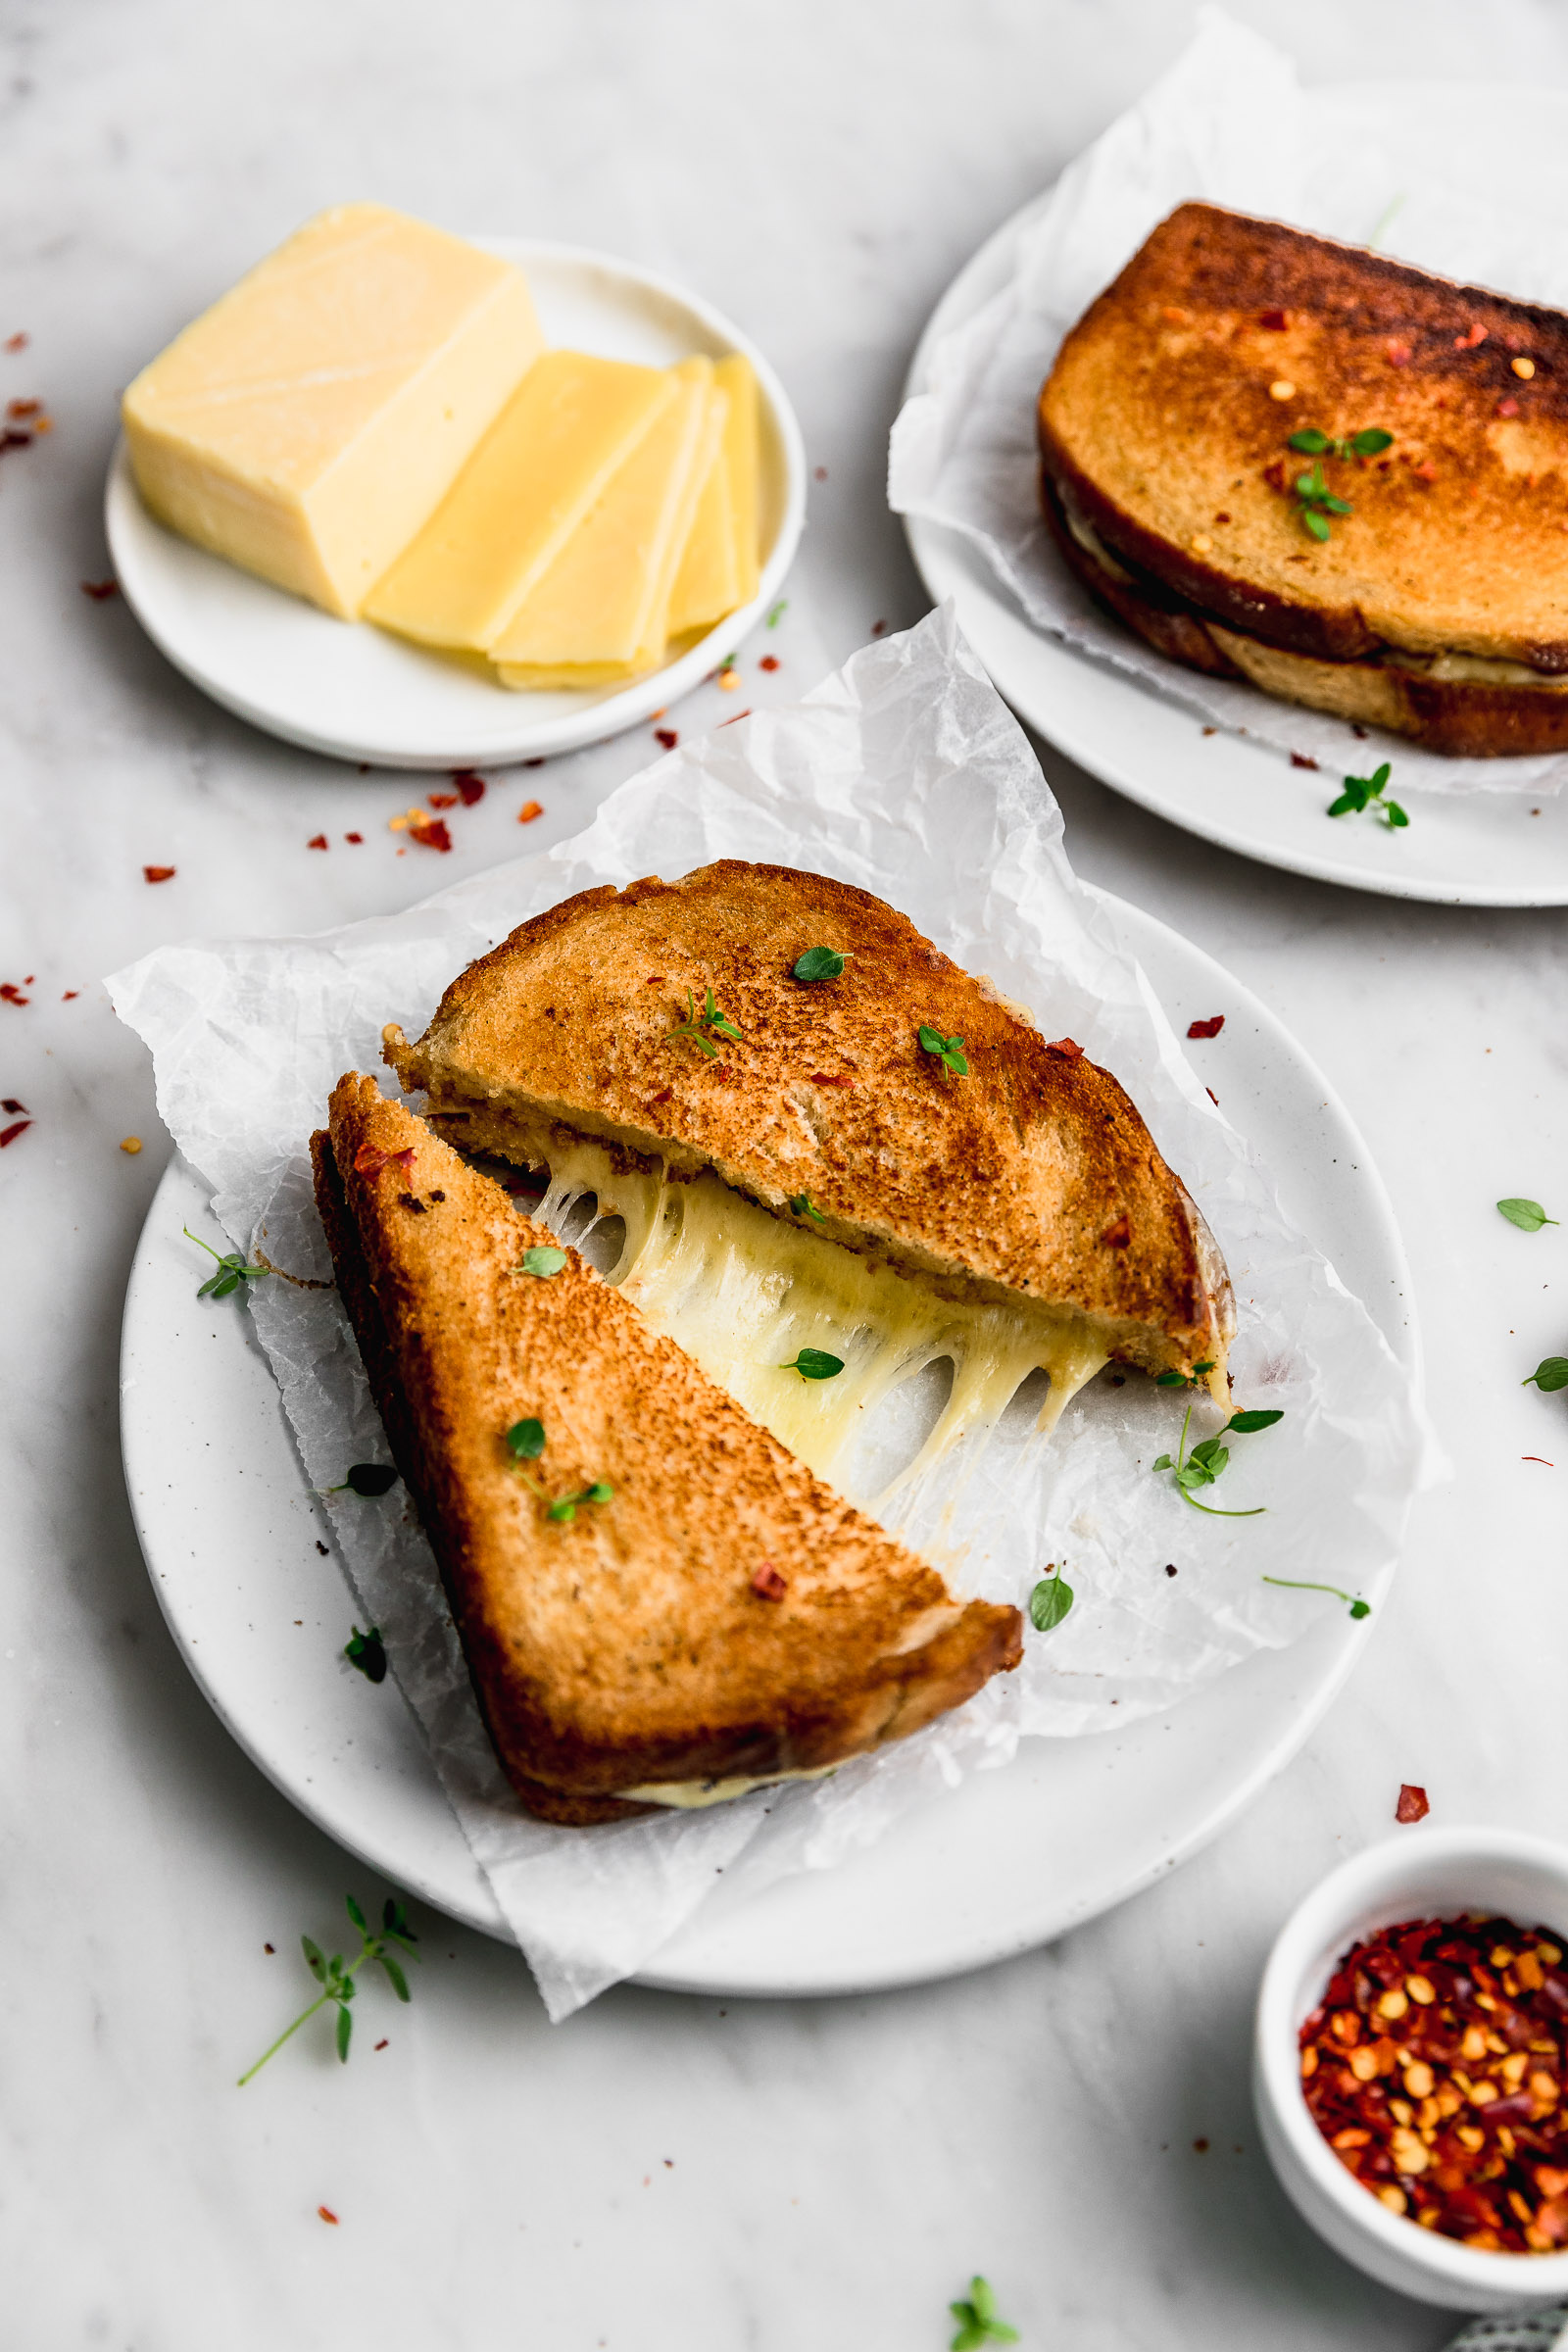 Todos nos merecemos un buen sandwich de queso caliente (grilled cheese). Y aunque es algo sencillo, les tengo un truco genial para que hagan la mejor versión que existe (modestia aparte).